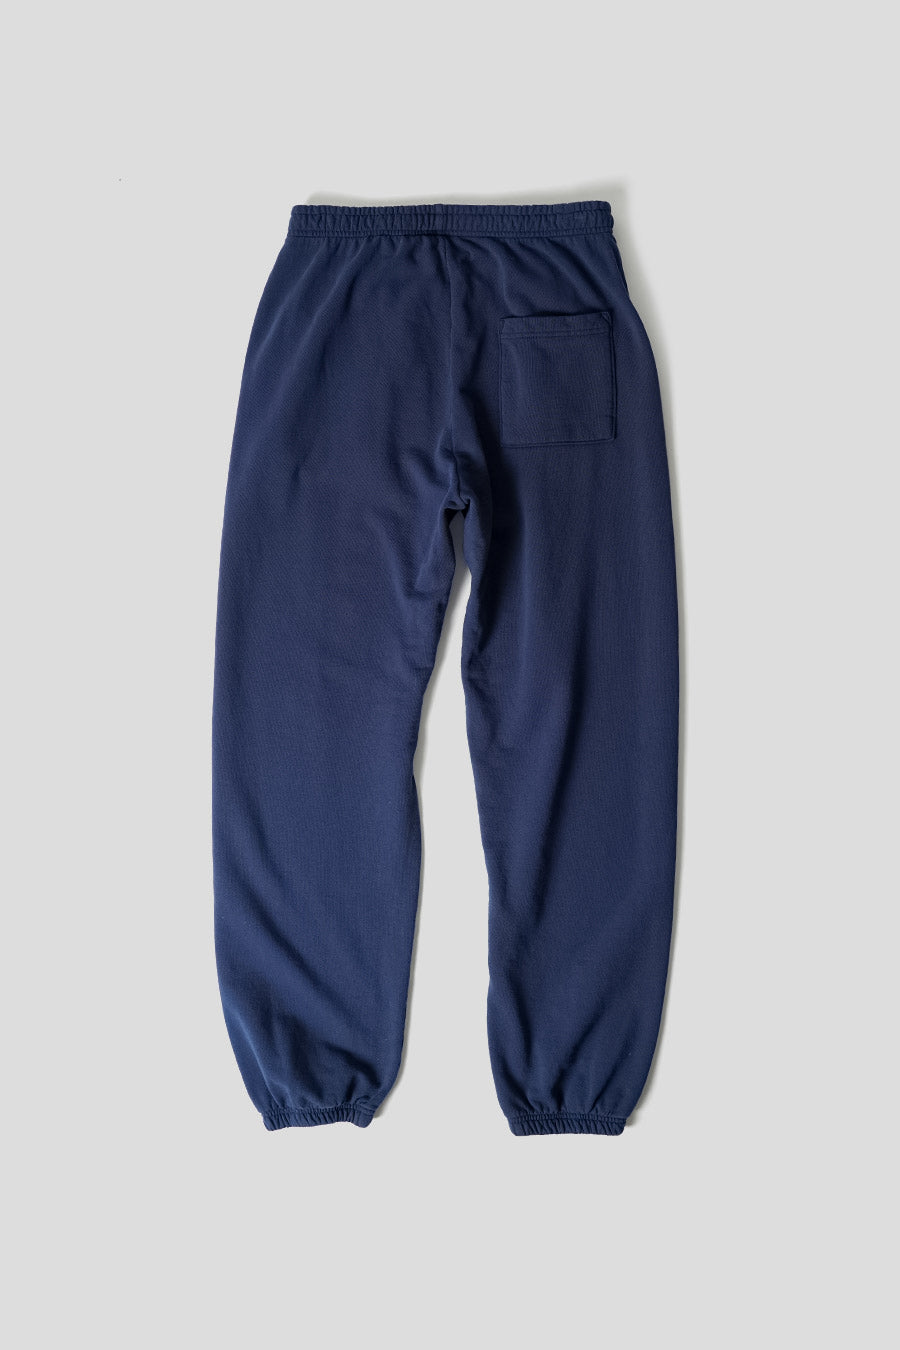 Buy Sky Blue Track Pants for Women by Adidas Originals Online | Ajio.com